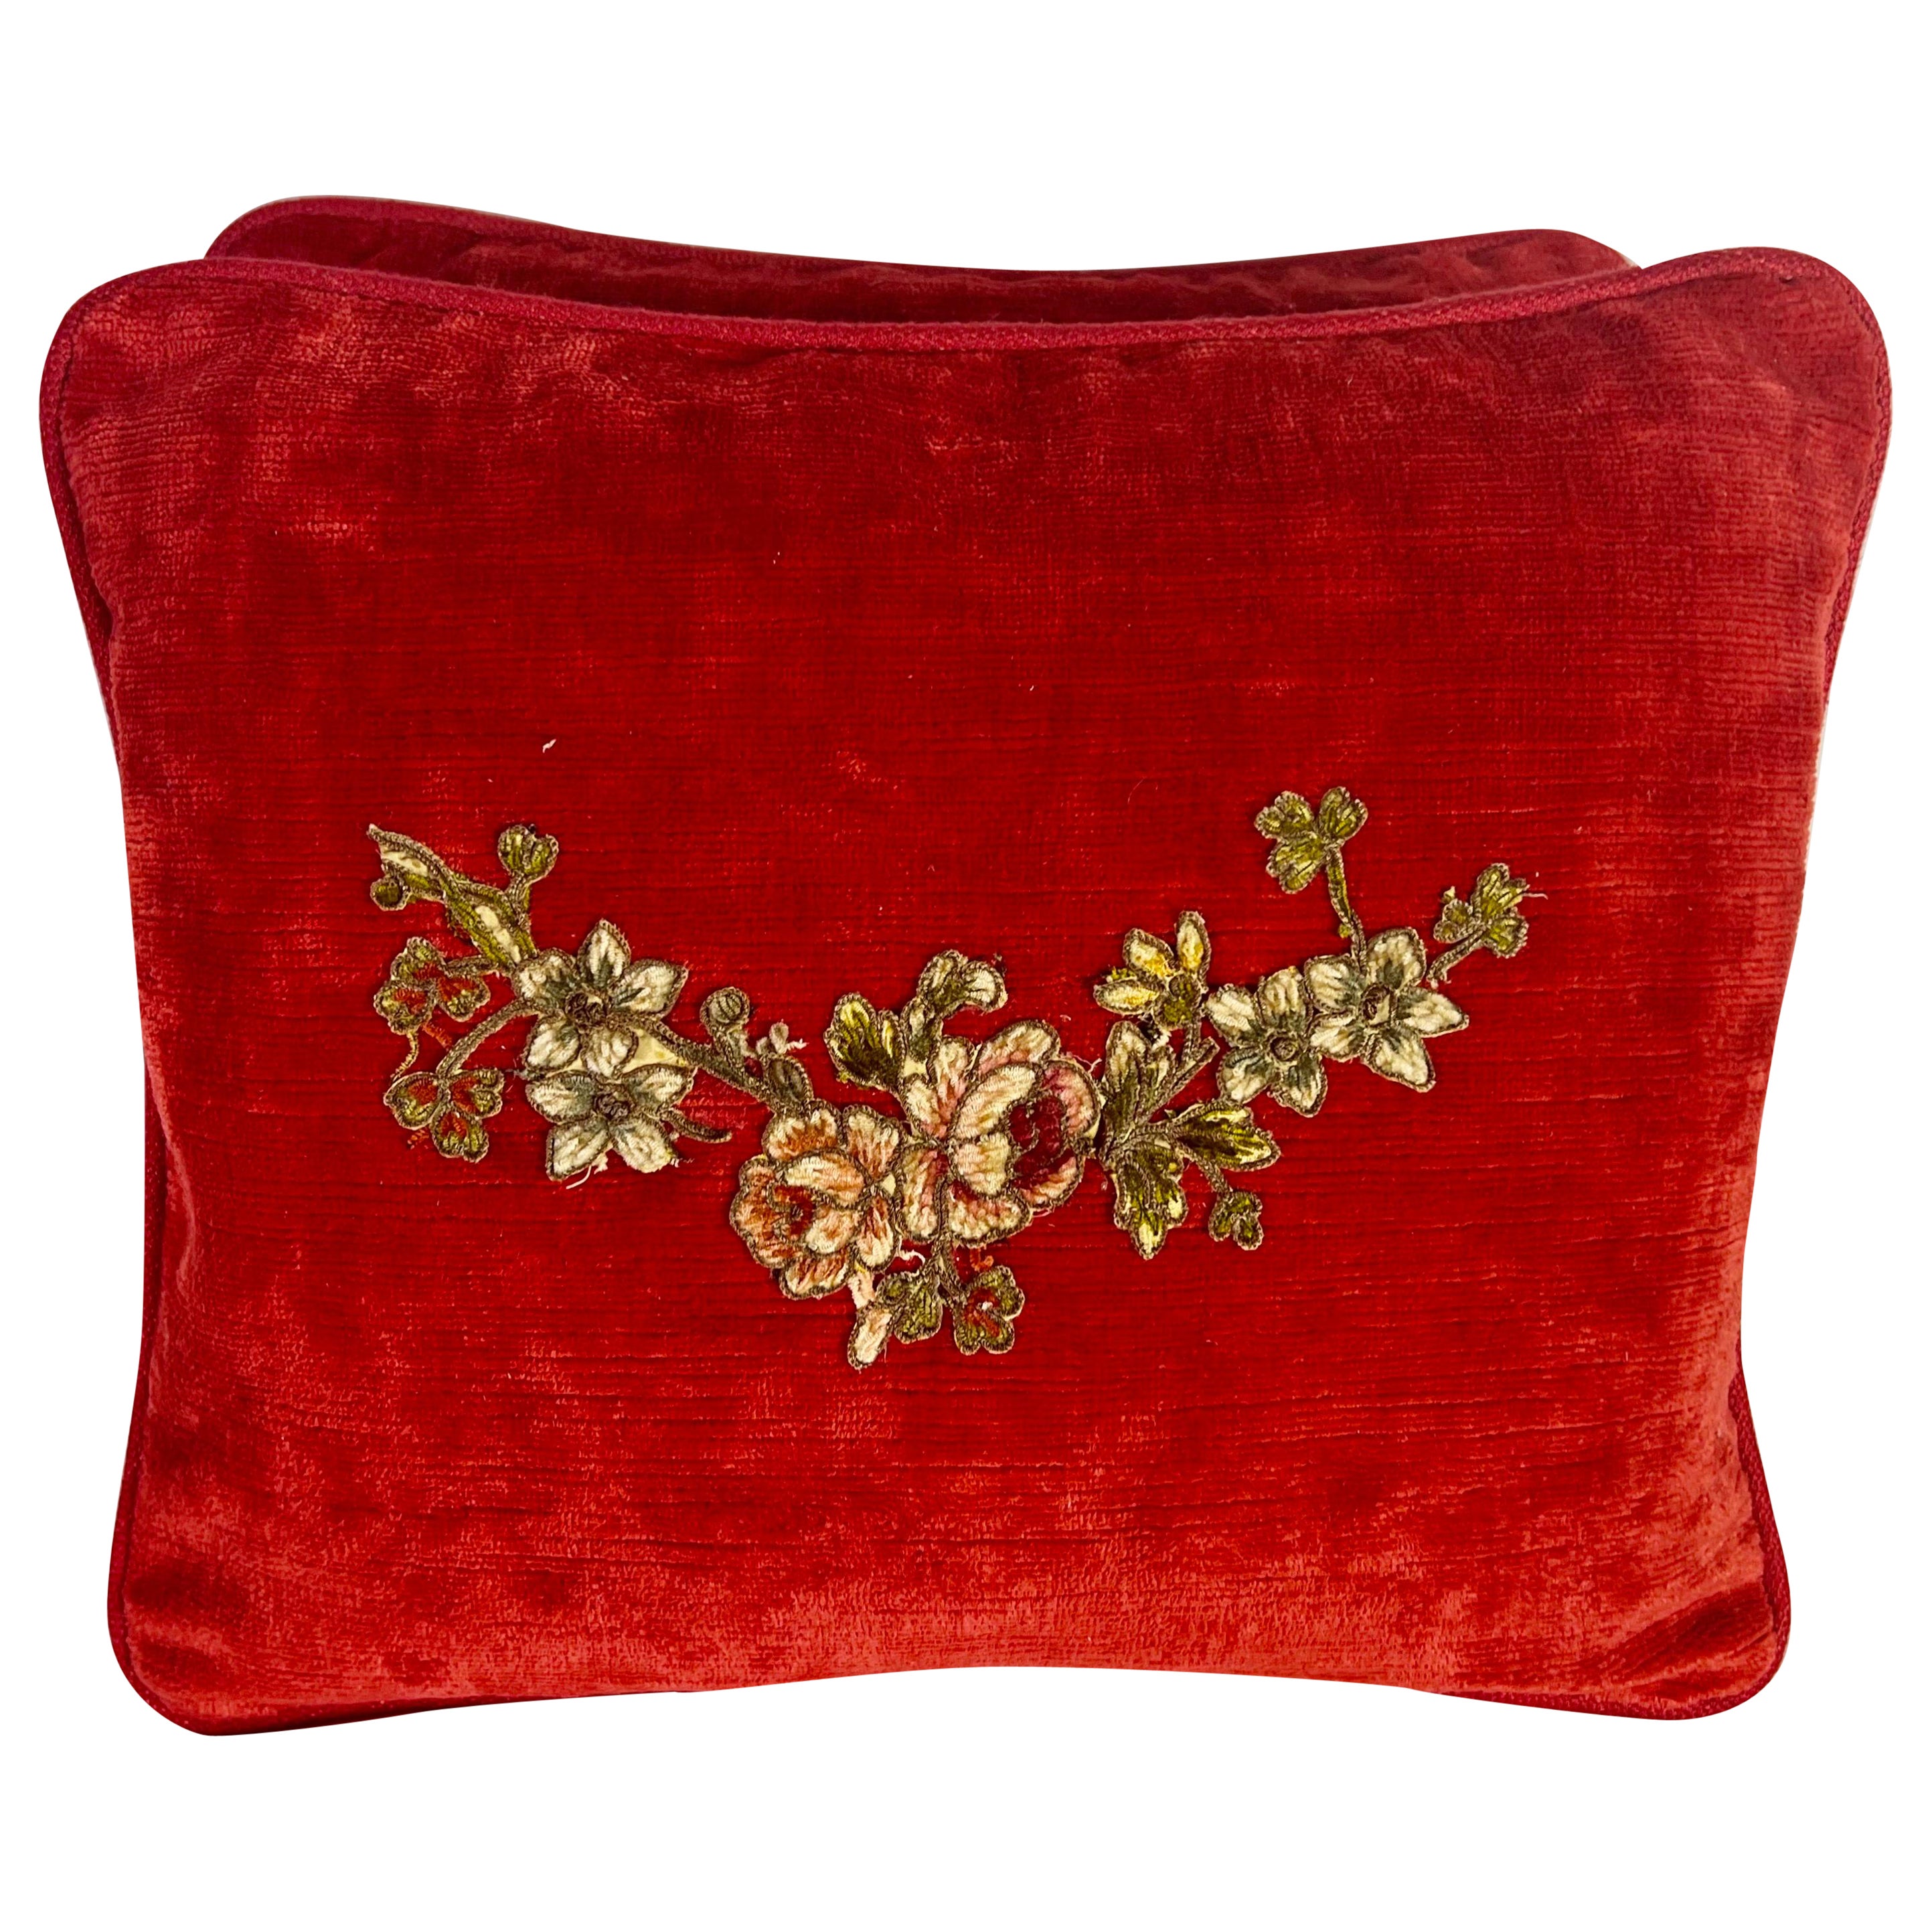 Pair of Custom Appliqué Red Velvet Pillows